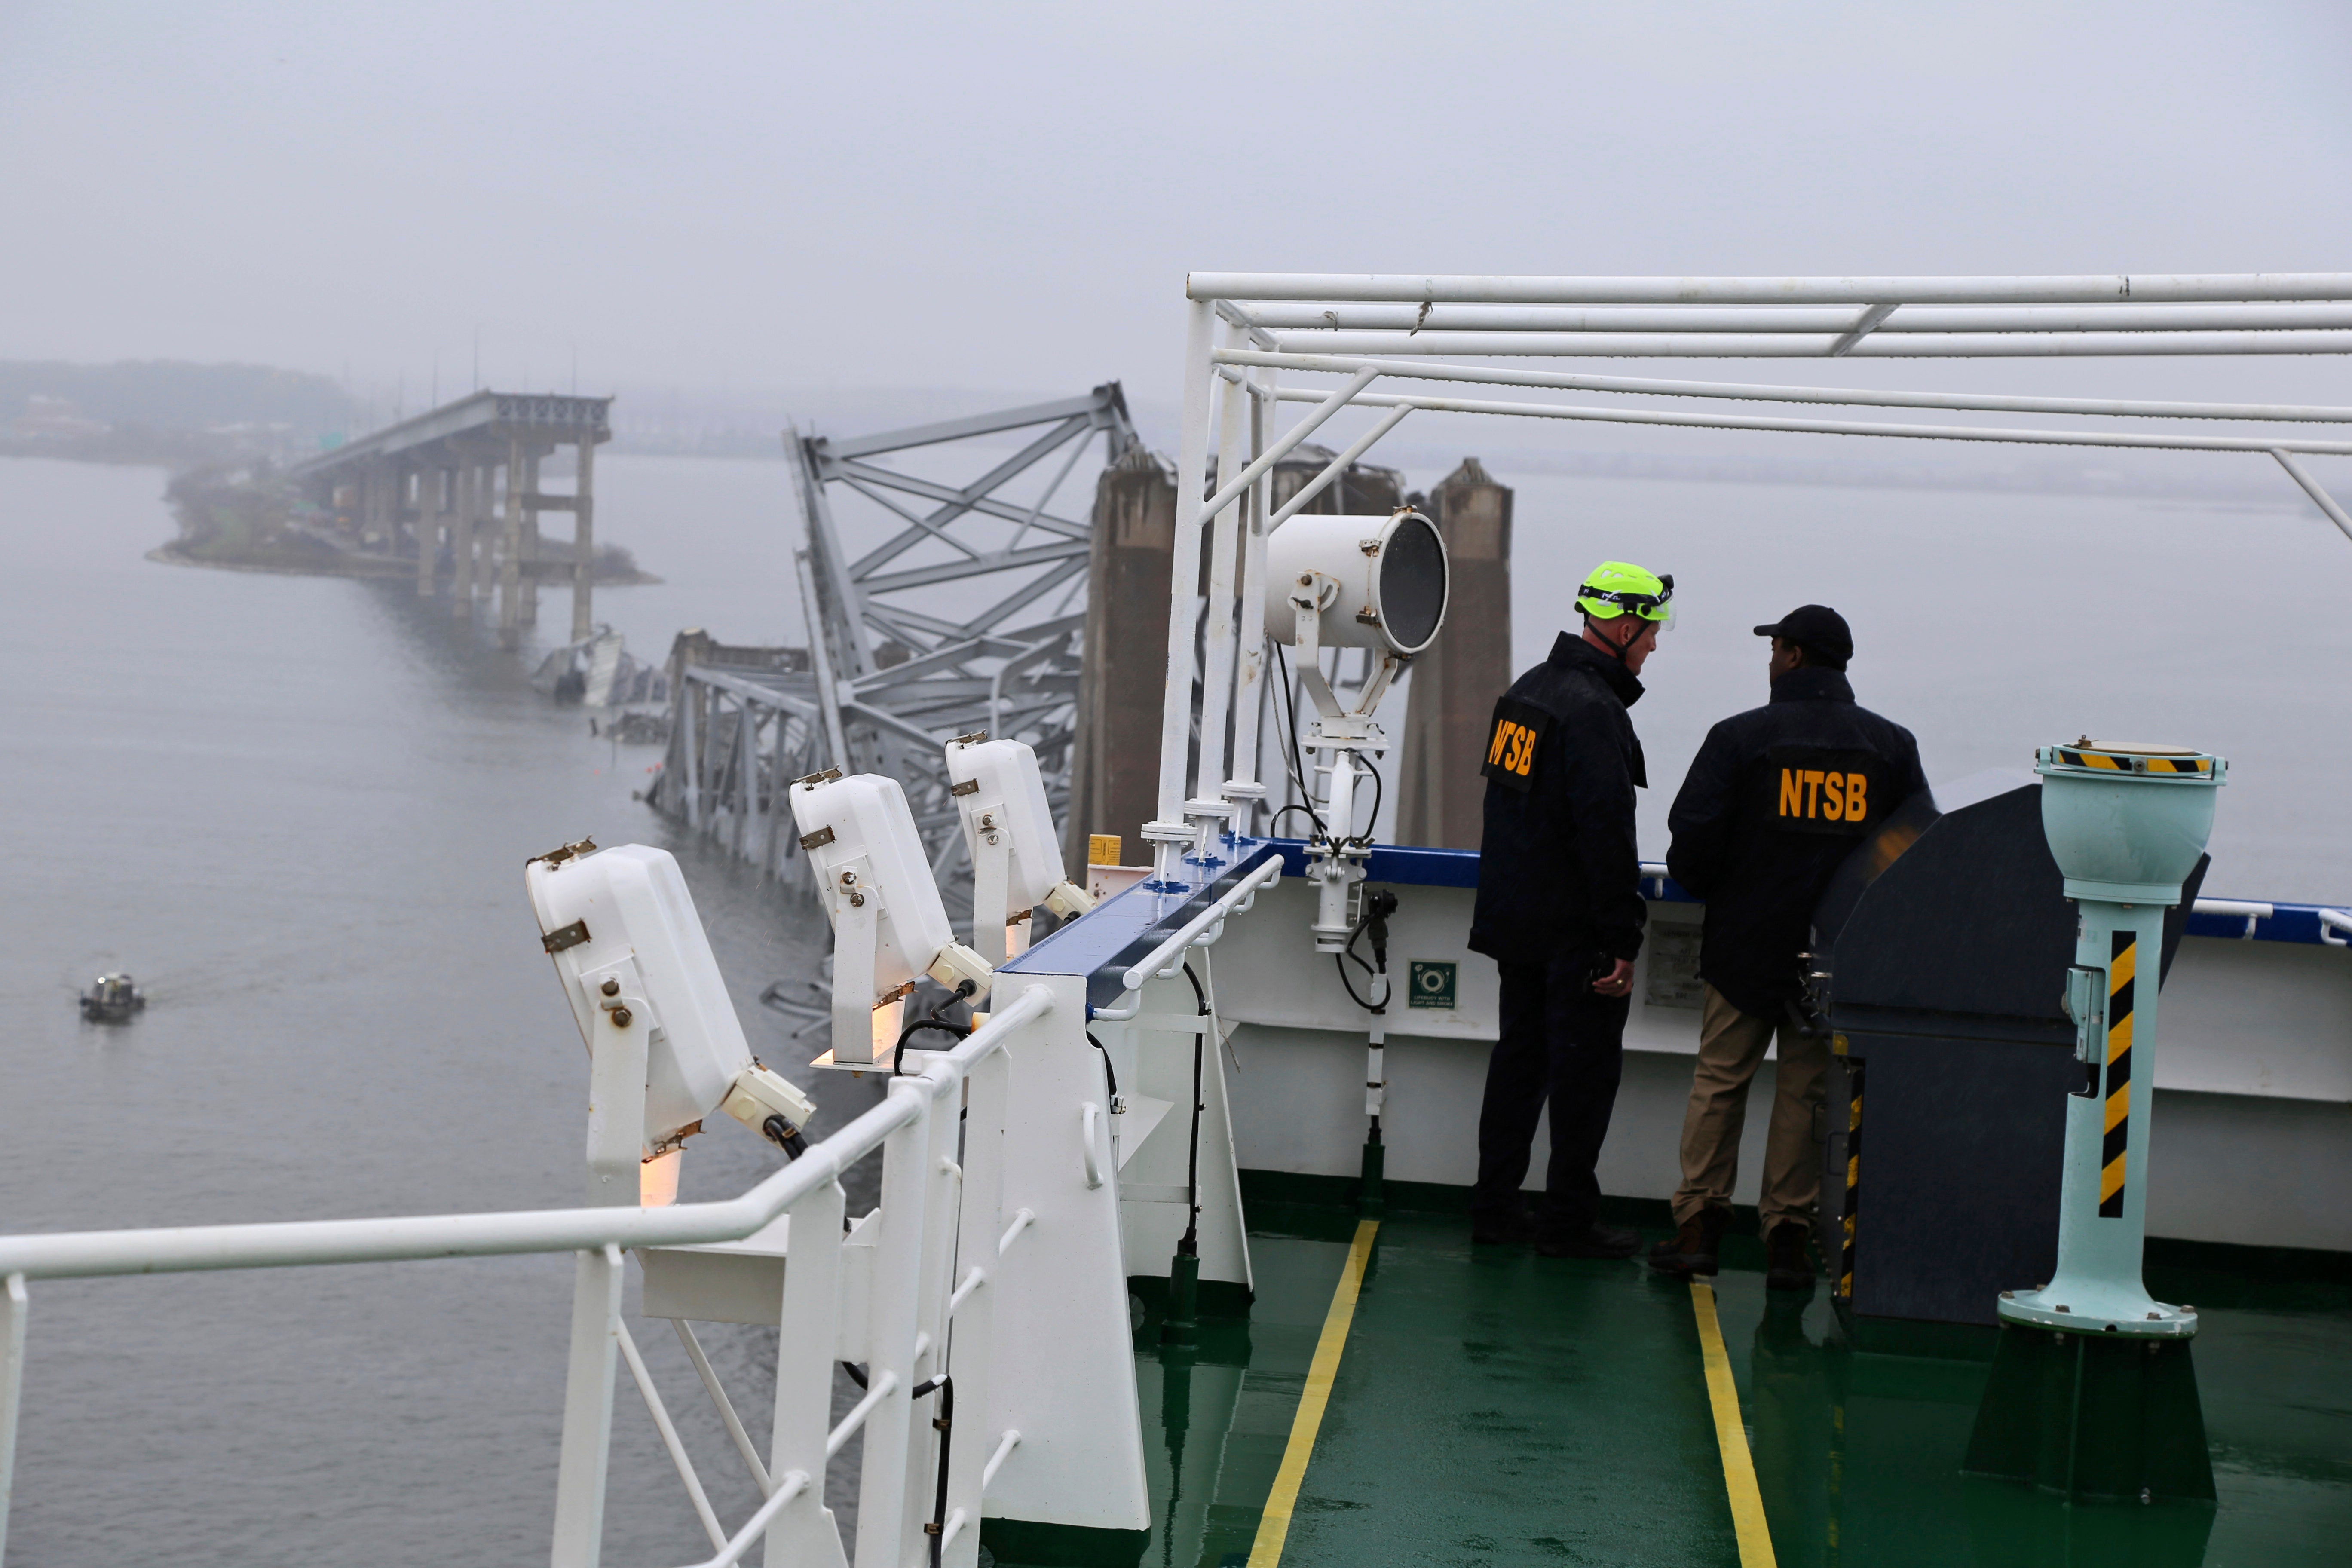 NTSB investigators on board the Dali ship